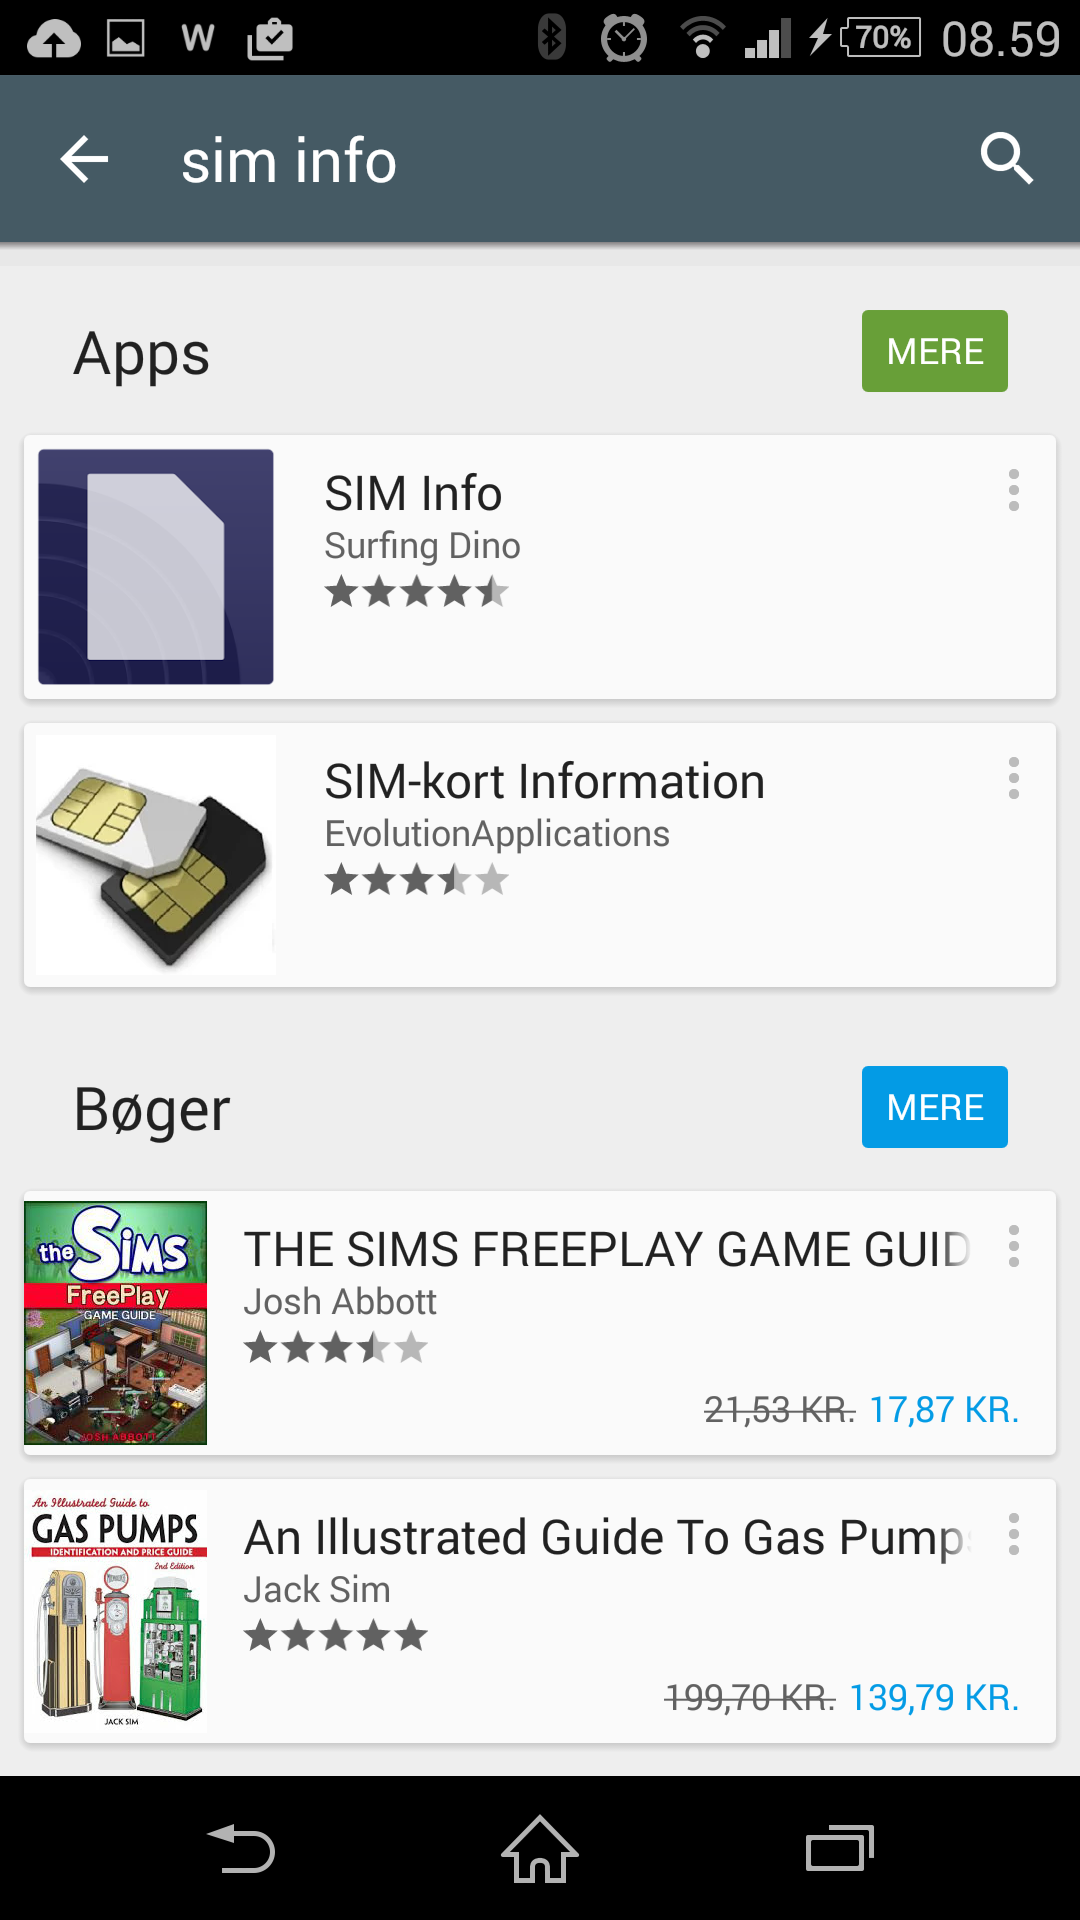 Click the "SIM info" app